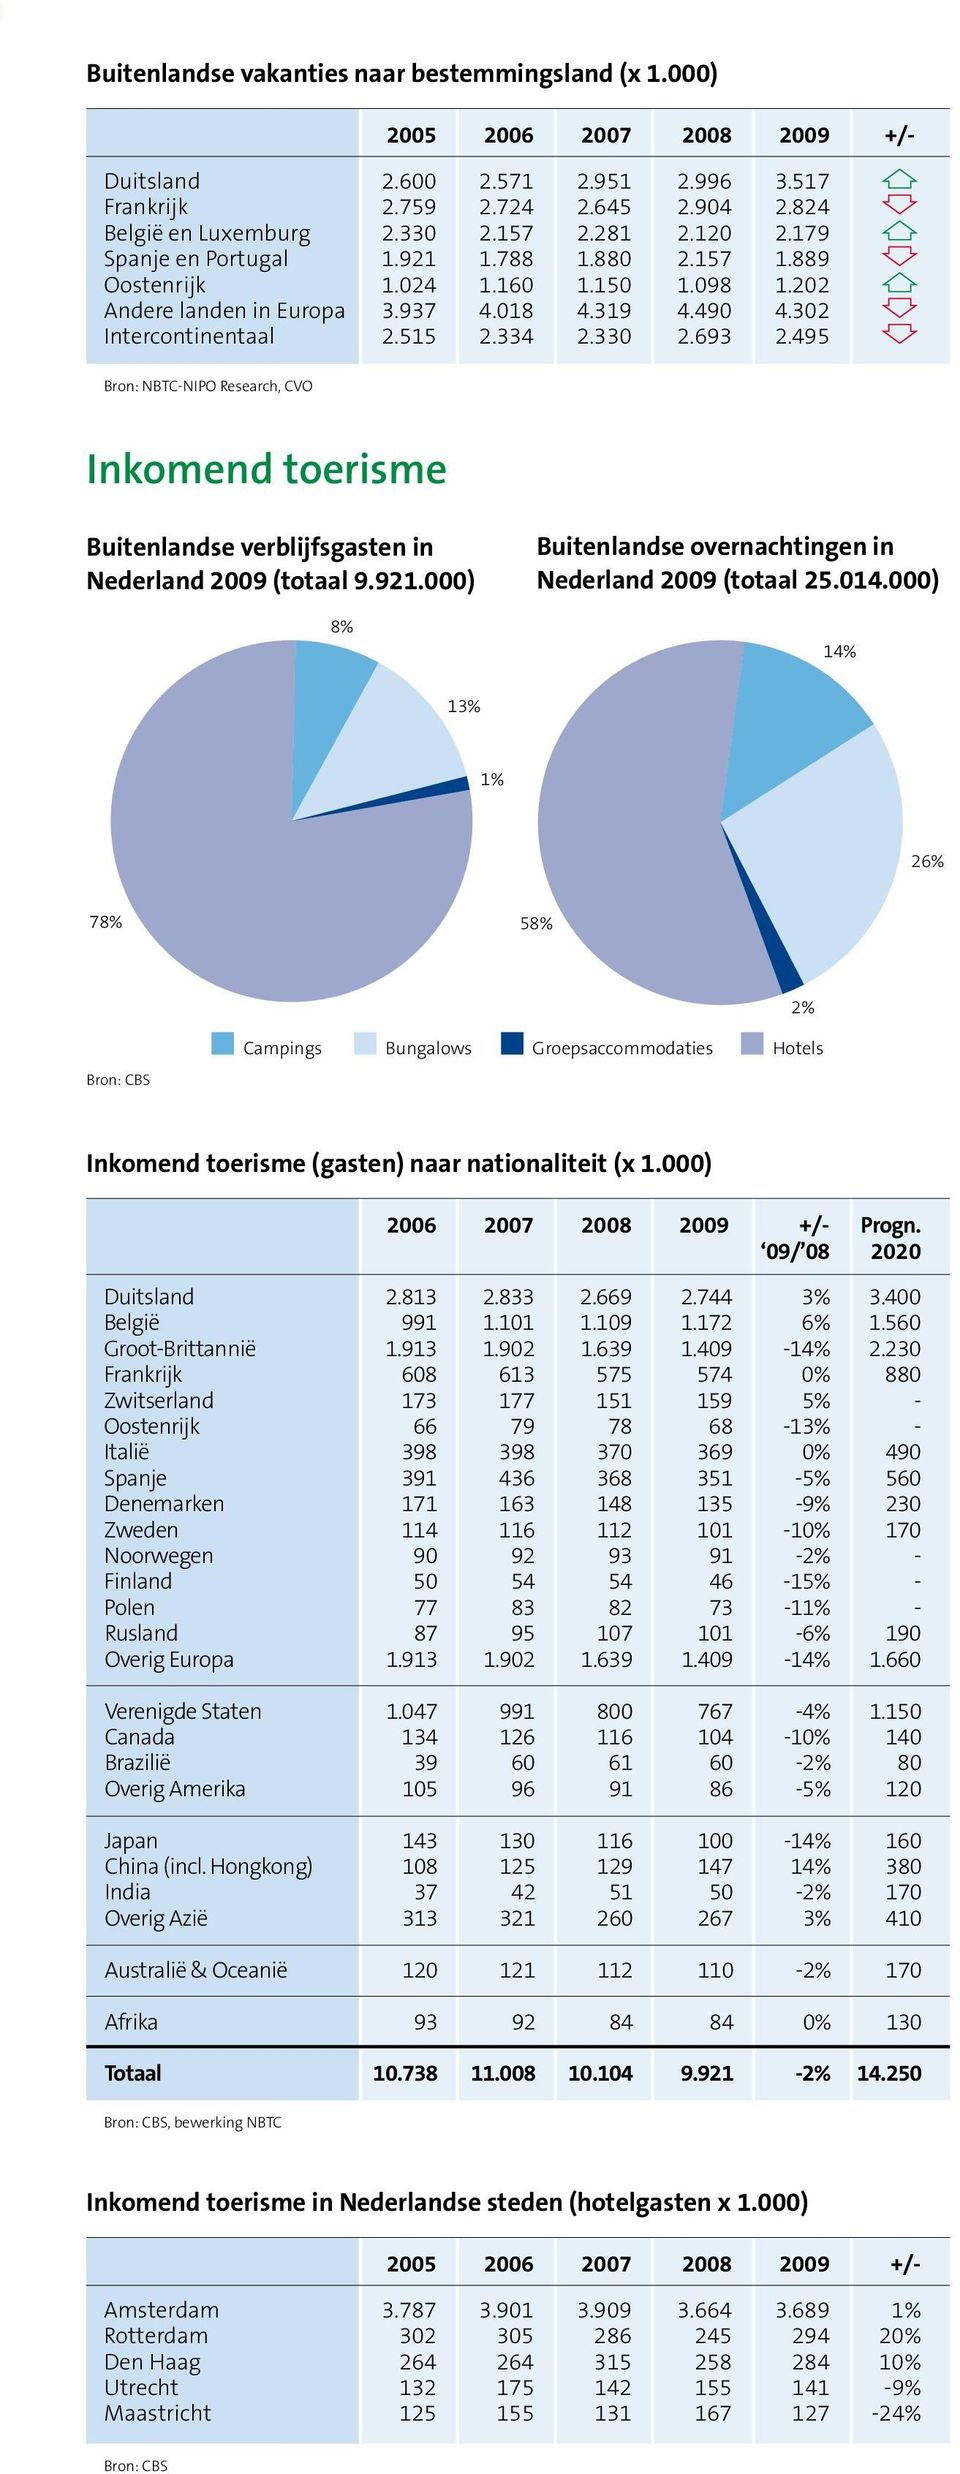 693 2.495 Inkomend toerisme Buitenlandse verblijfsgasten in Nederland 2009 (totaal 9.921.000) 8% Buitenlandse overnachtingen in Nederland 2009 (totaal 25.014.